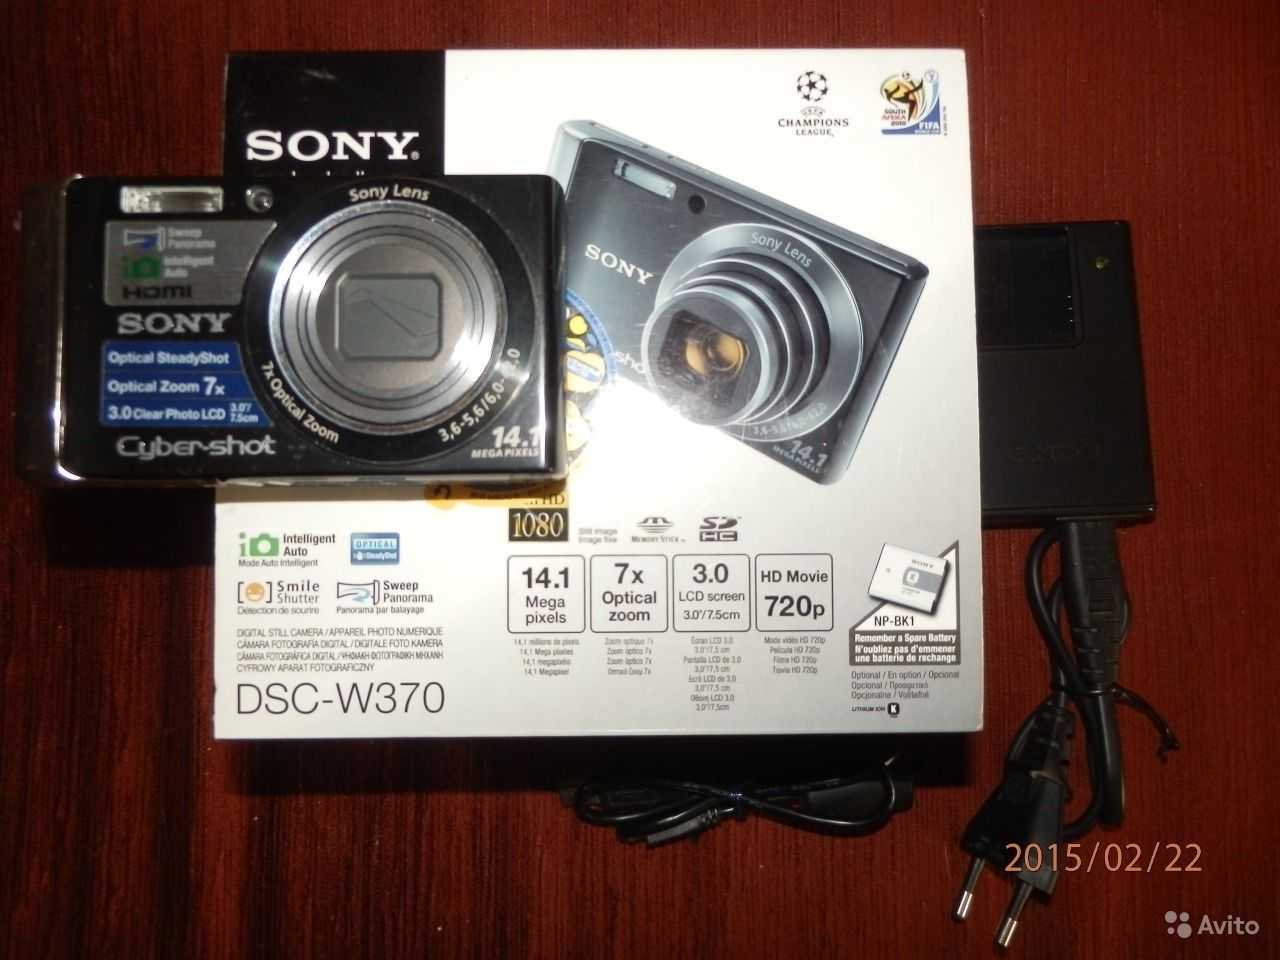 Цифровой фотоаппарат Sony DSC-W515 - подробные характеристики обзоры видео фото Цены в интернет-магазинах где можно купить цифровую фотоаппарат Sony DSC-W515